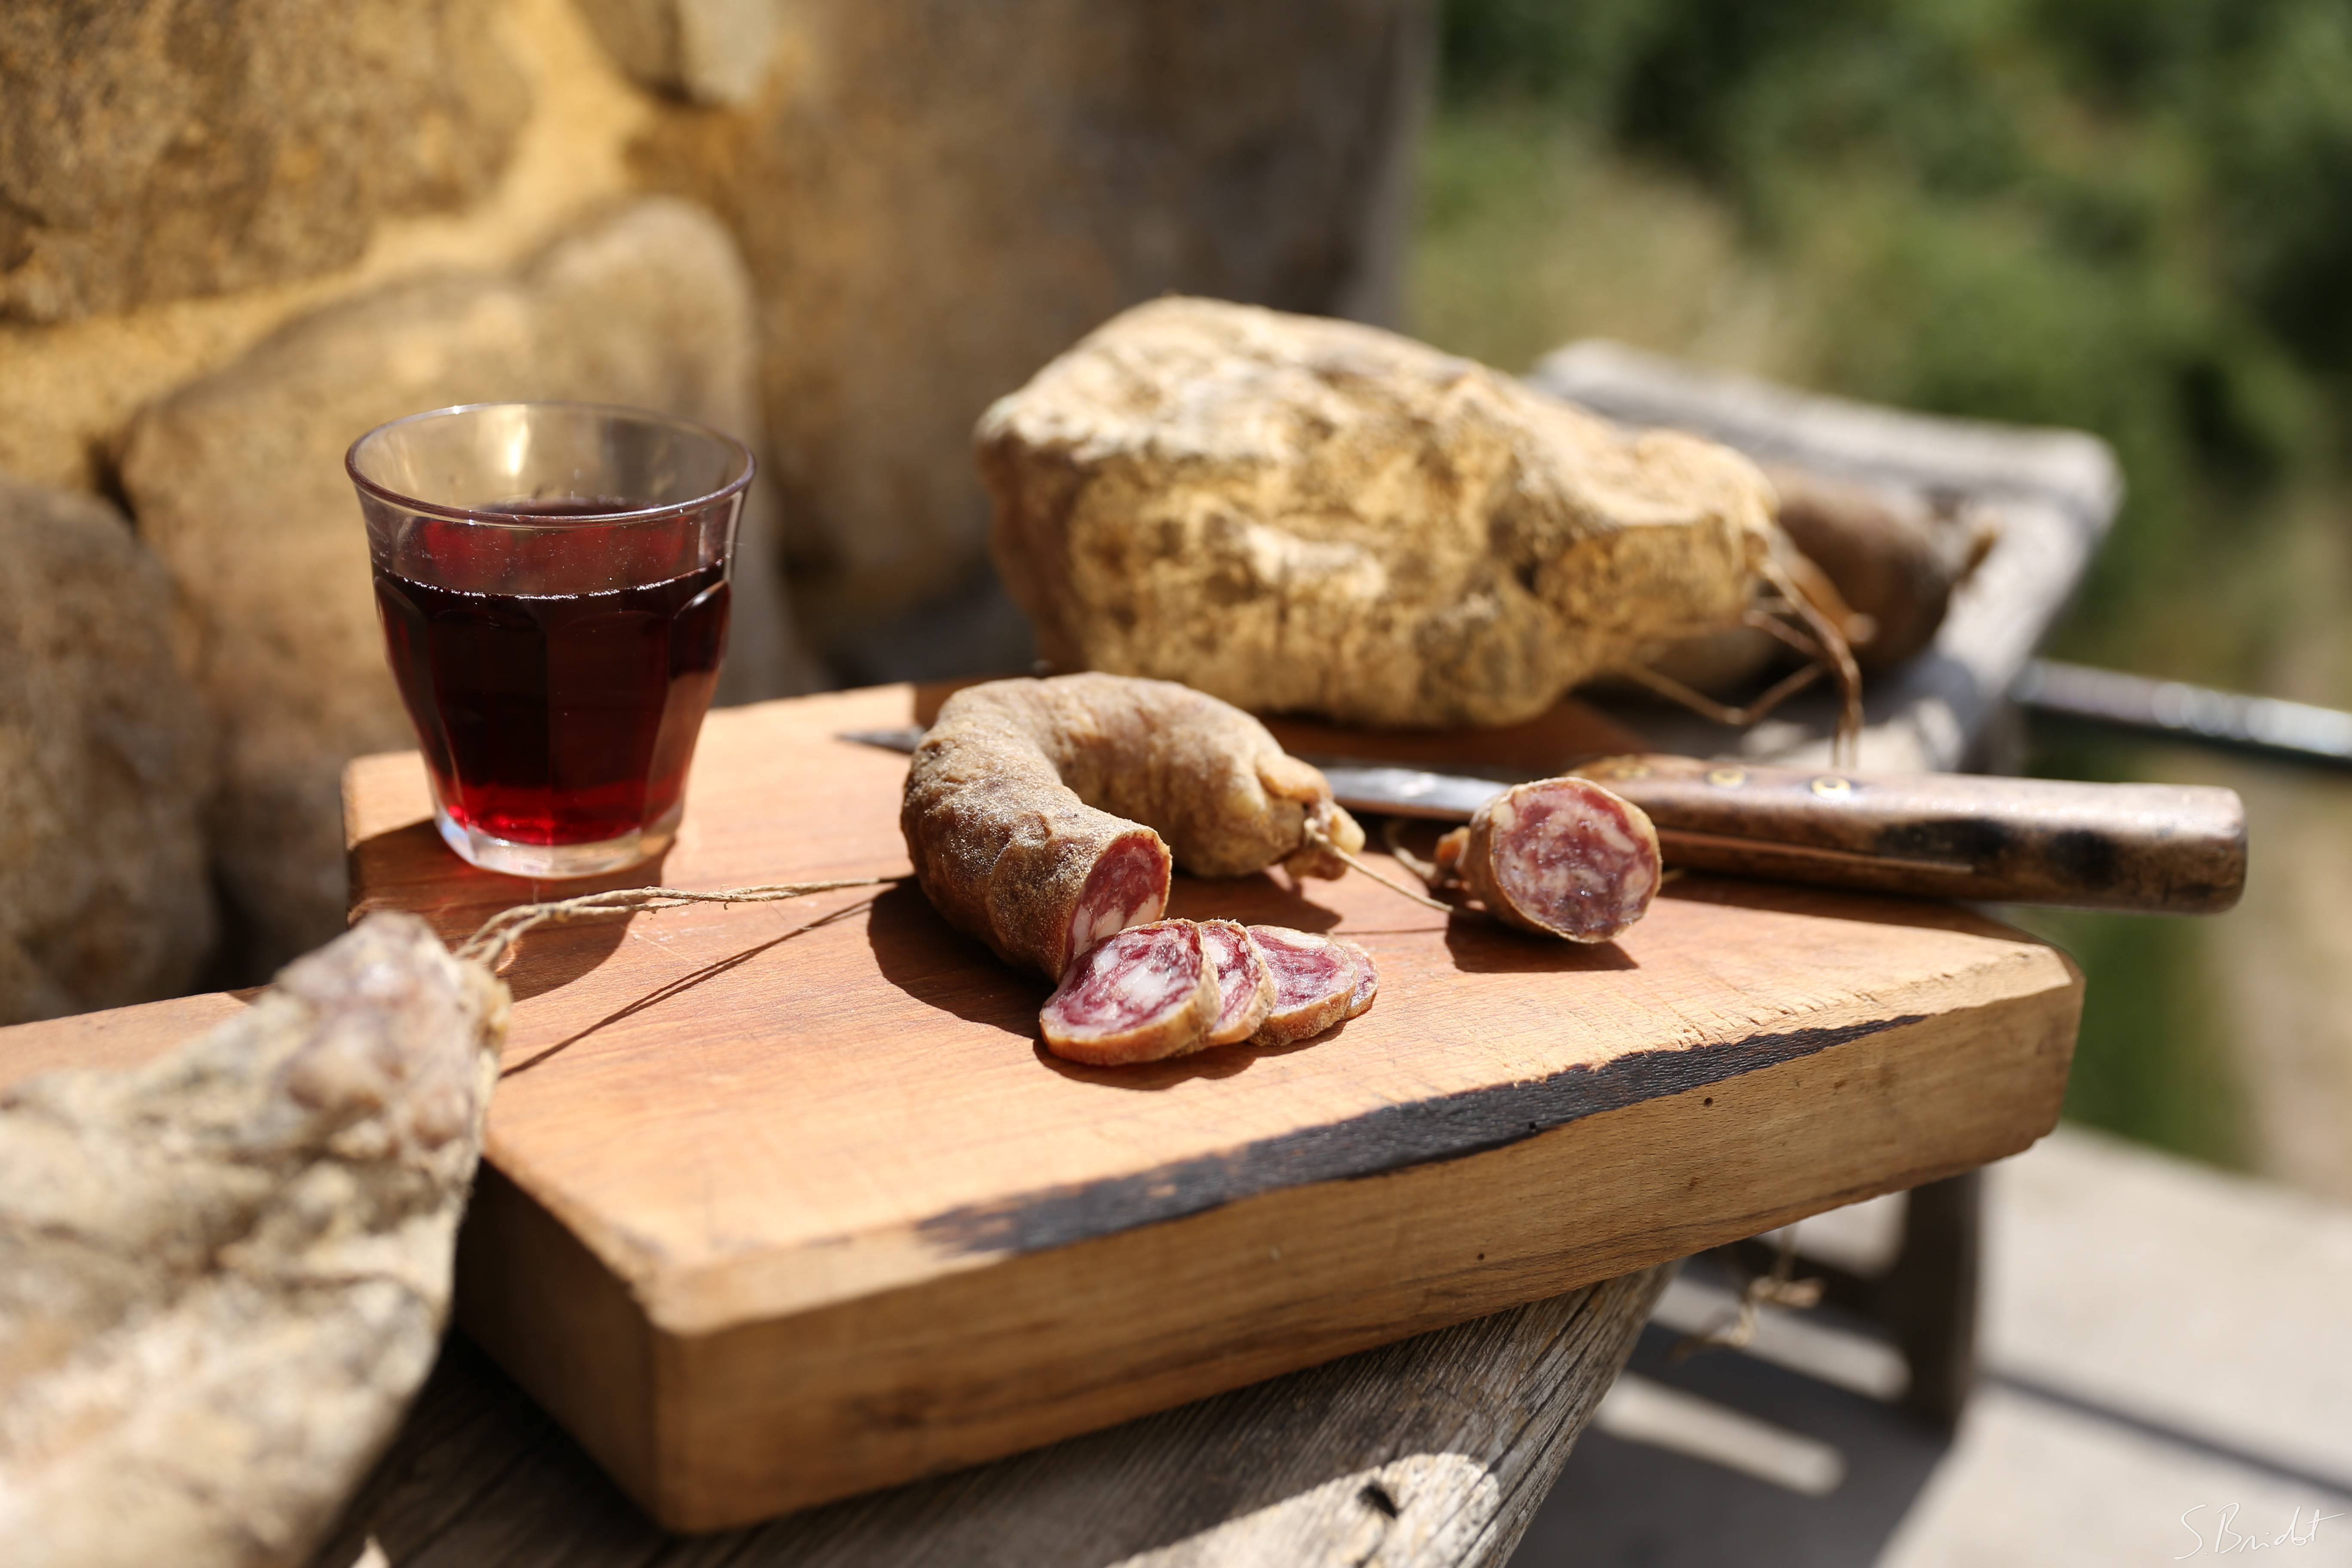  Wurst aus der Ardèche und ein Glas Saint Joseph